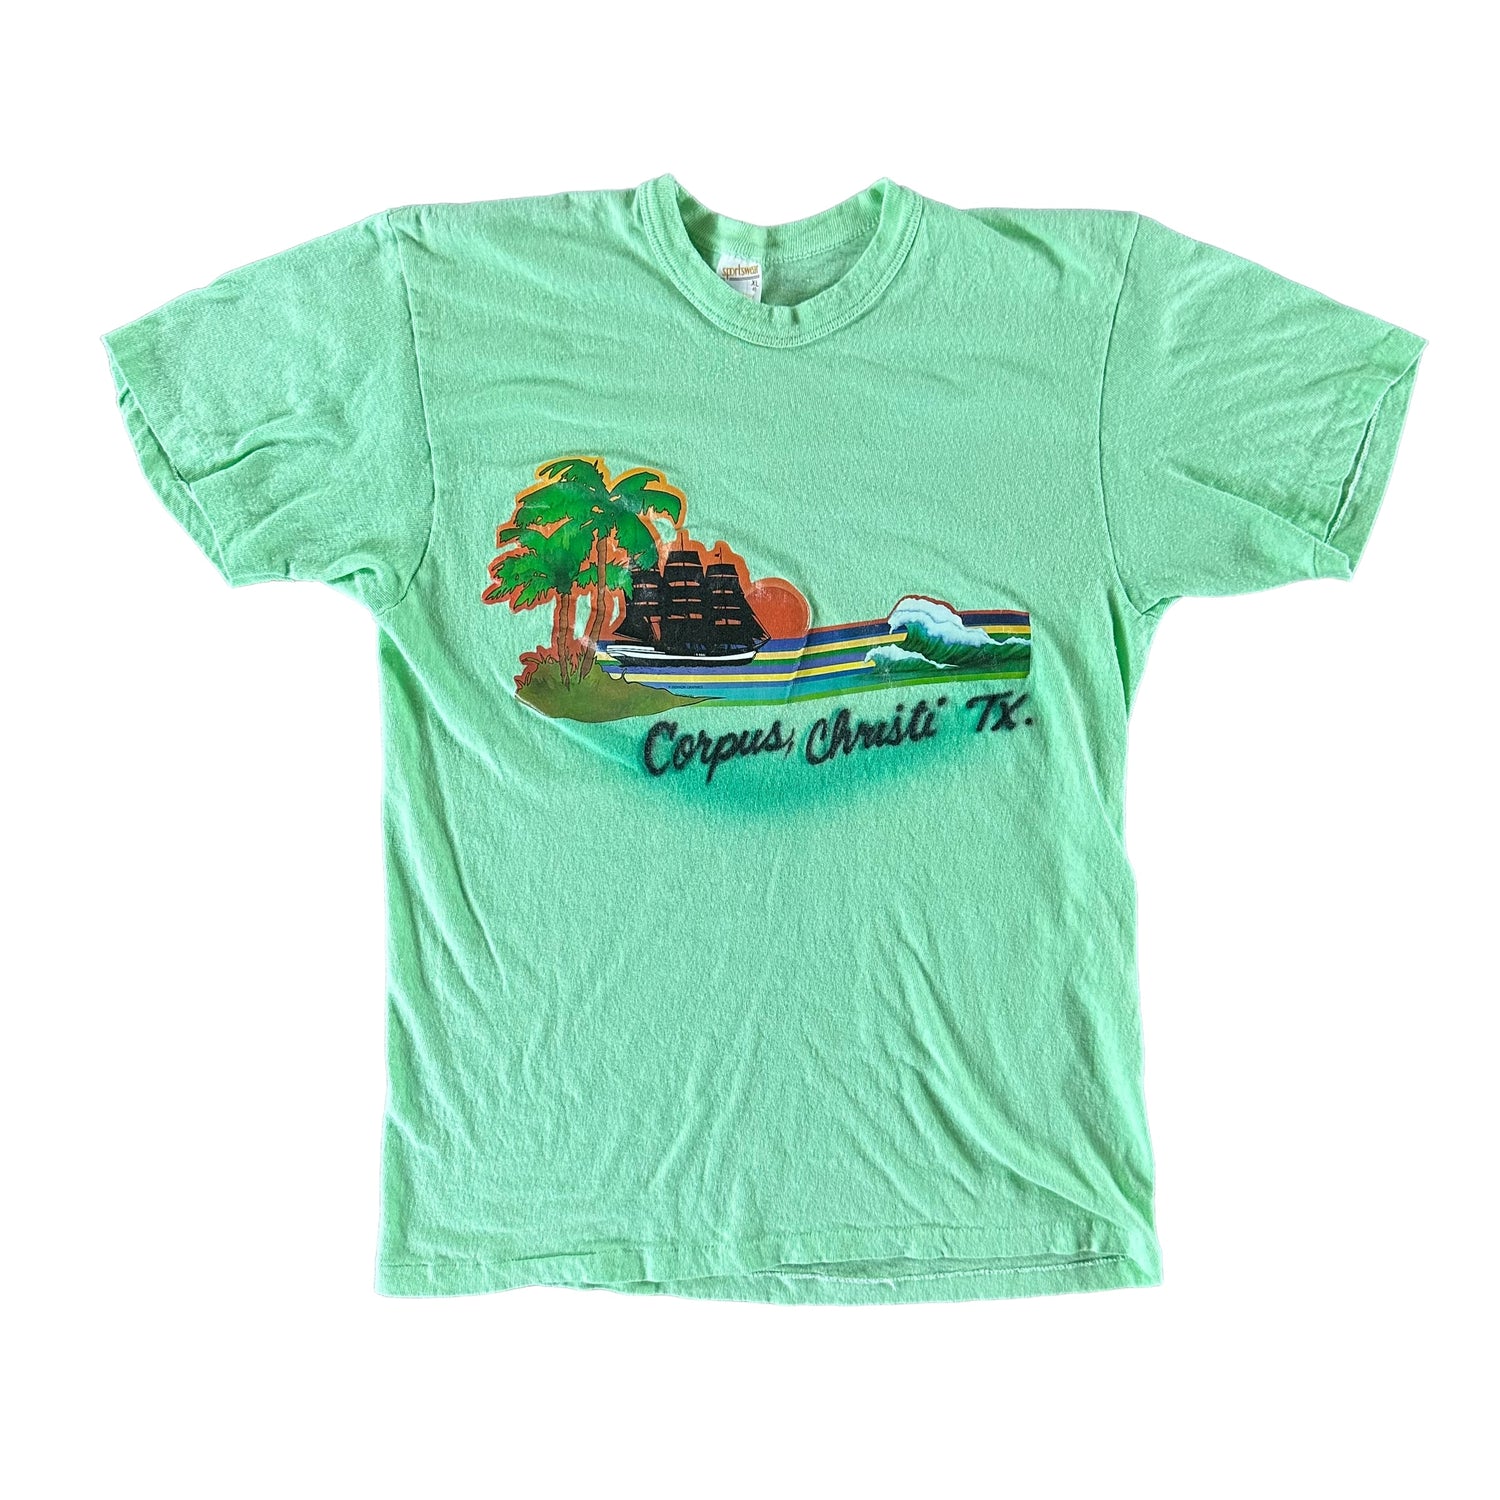 Vintage 1980s Texas T-shirt size XL